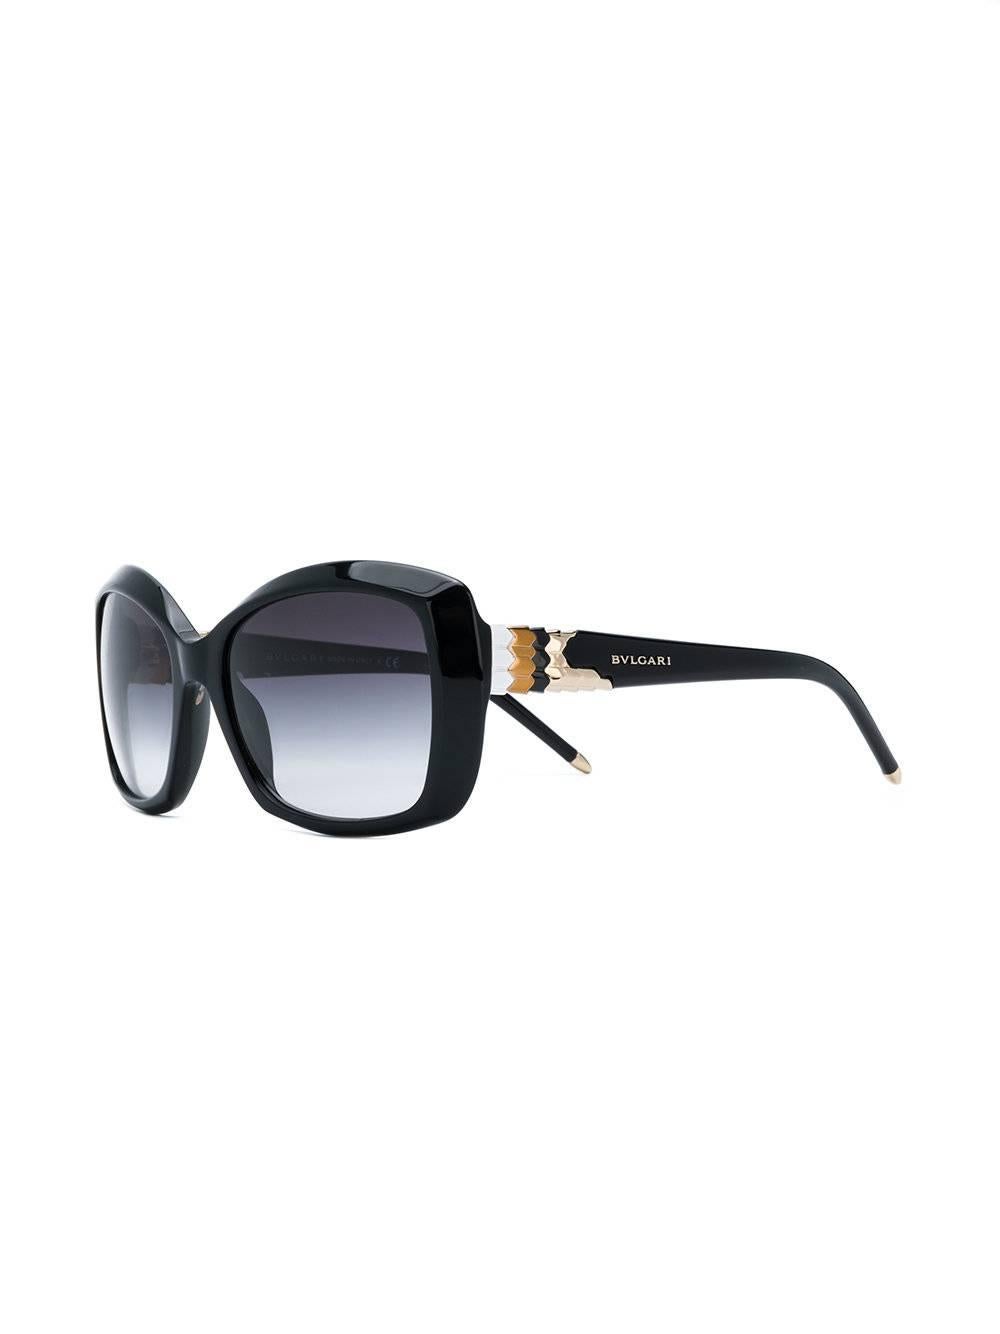 Ajoutez de l'originalité à votre look avec ces lunettes de soleil à monture carrée de Bulgari, en noir avec des embellissements en métal. 

Cet article est livré avec un étui de protection.

Couleur : Noir

Matériau : Plastique

Mesures : Profondeur